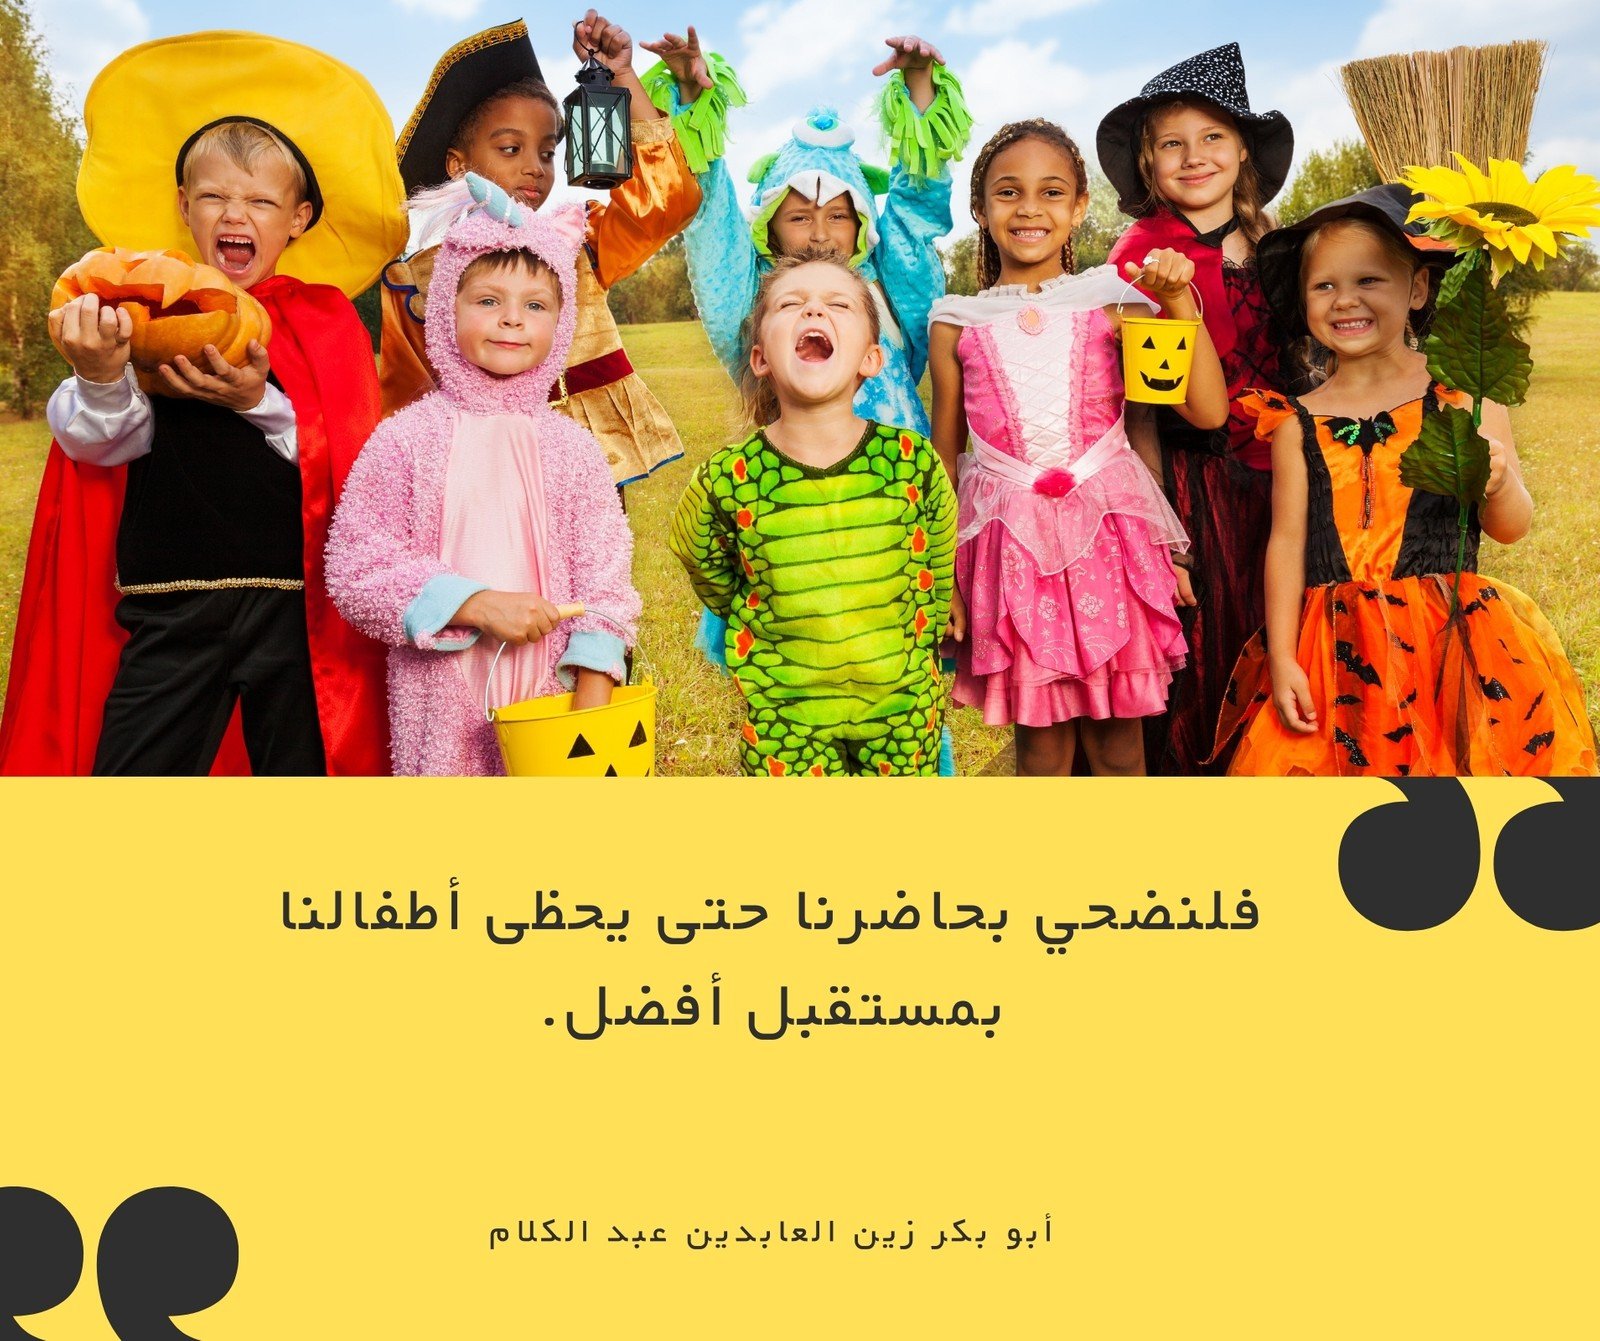 منشور فيسبوك أصفر صورة أطفال بزي احتفال